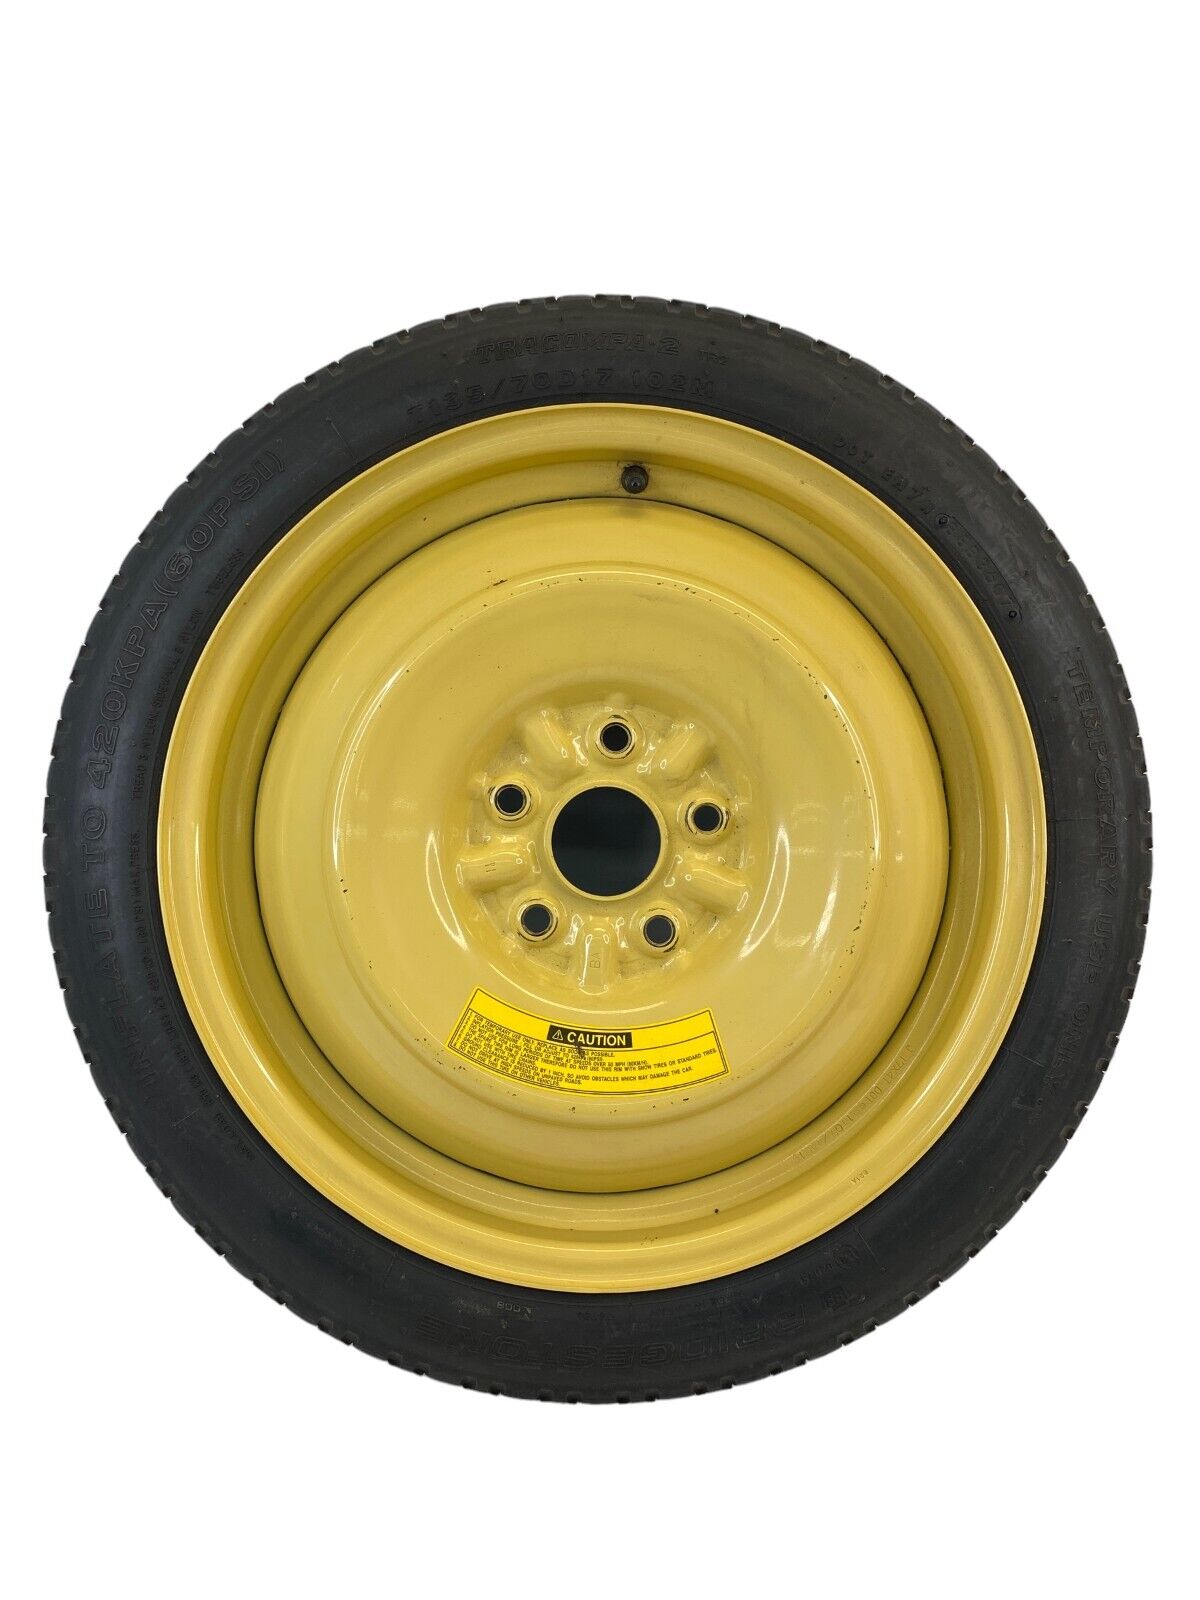 2008-2015 Scion xB Spare Tire Compact Donut Wheel Rim T135/70/D17 102M E40211781